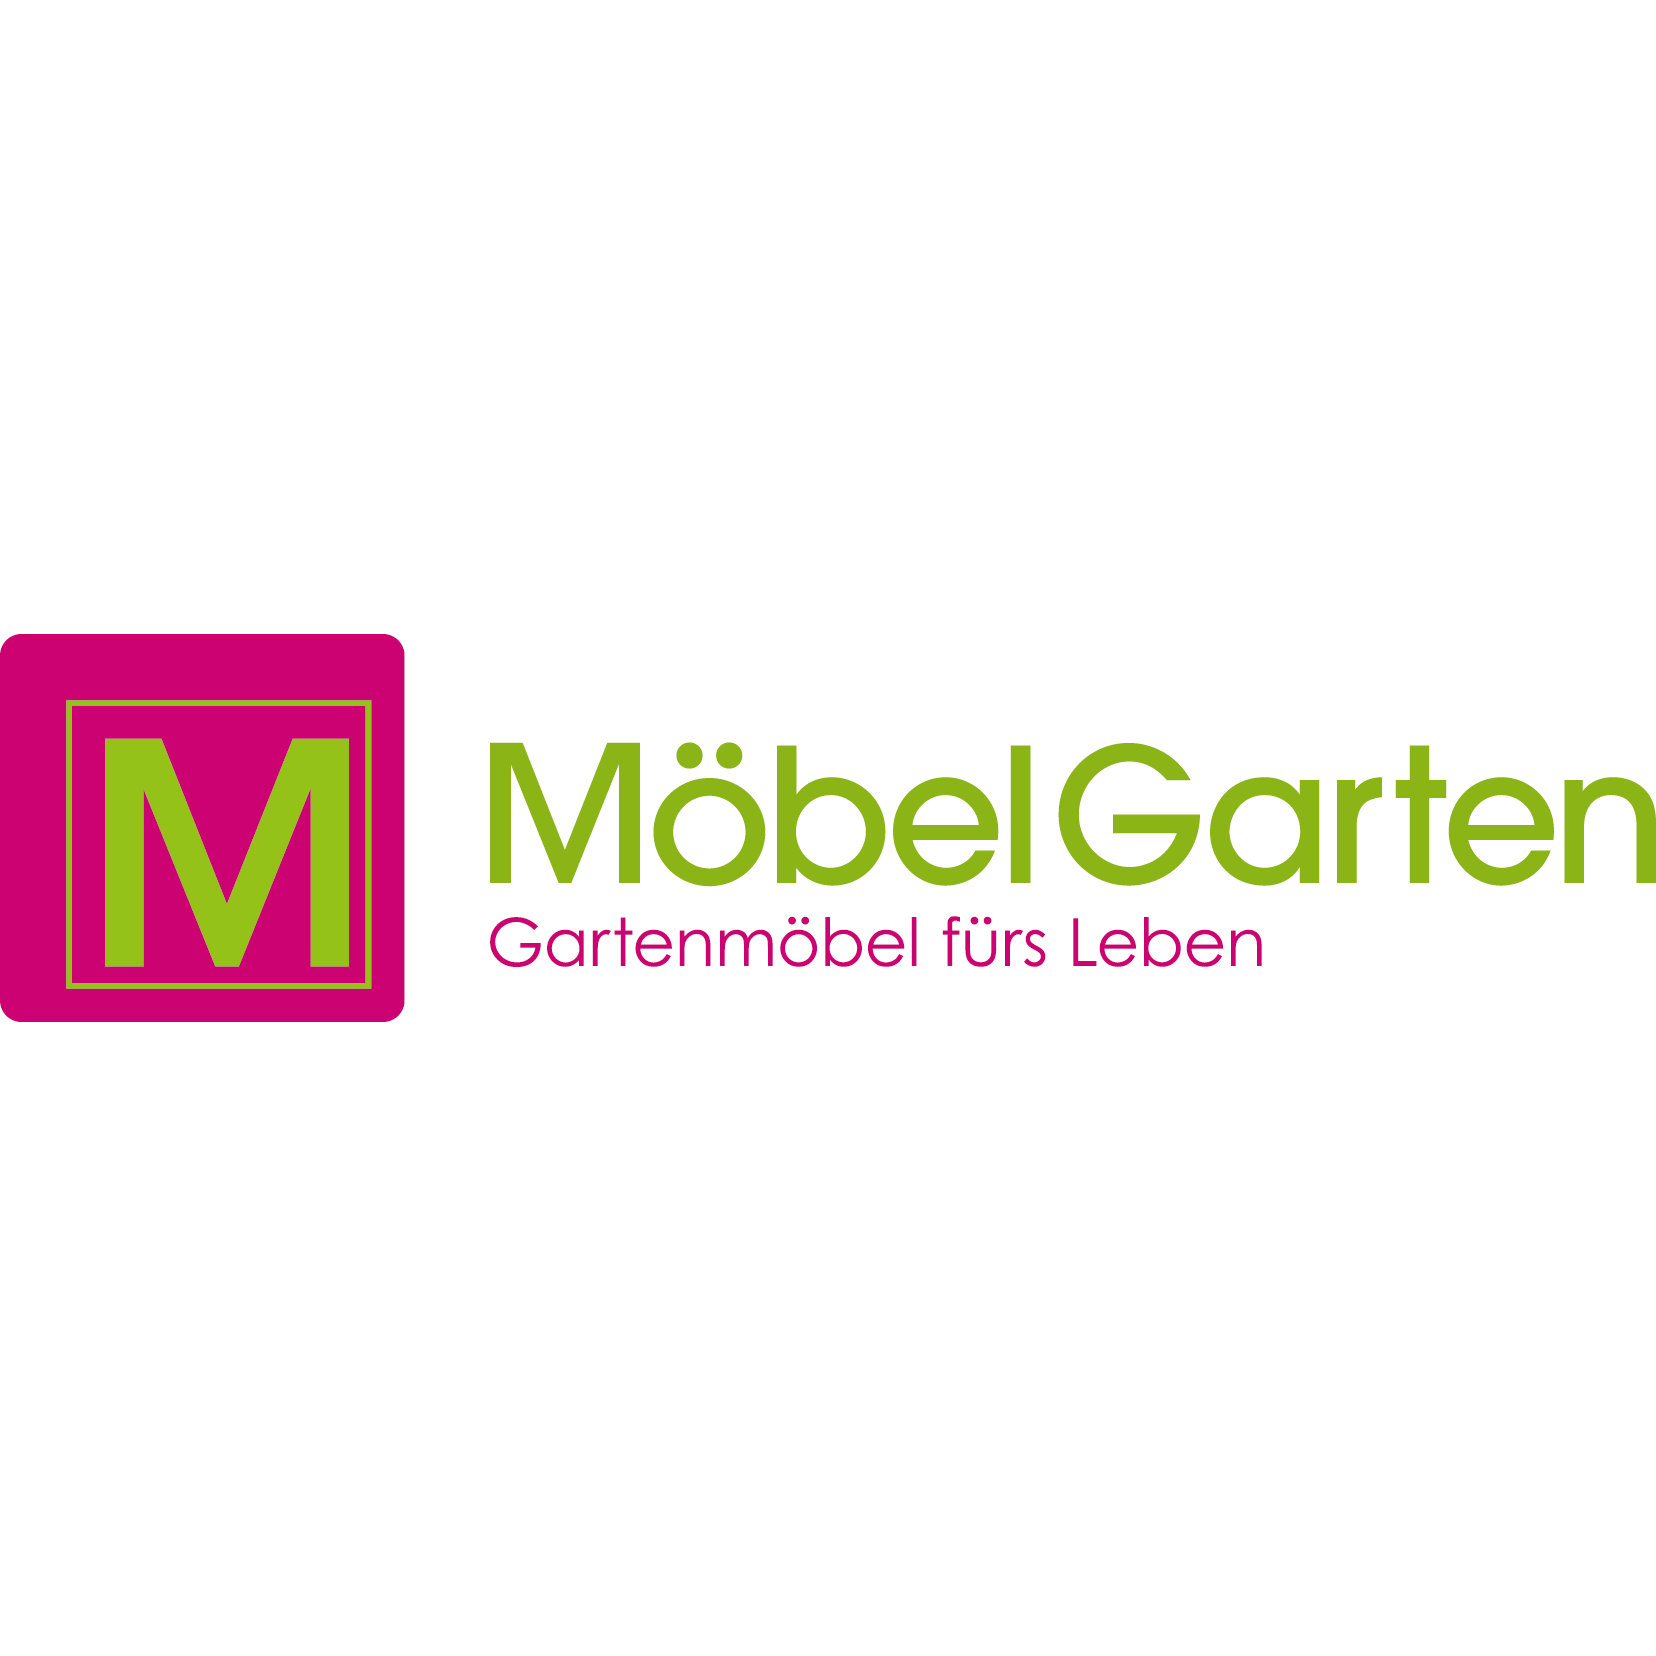 Kundenlogo MöbelGarten GmbH - Gartenmöbel fürs Leben